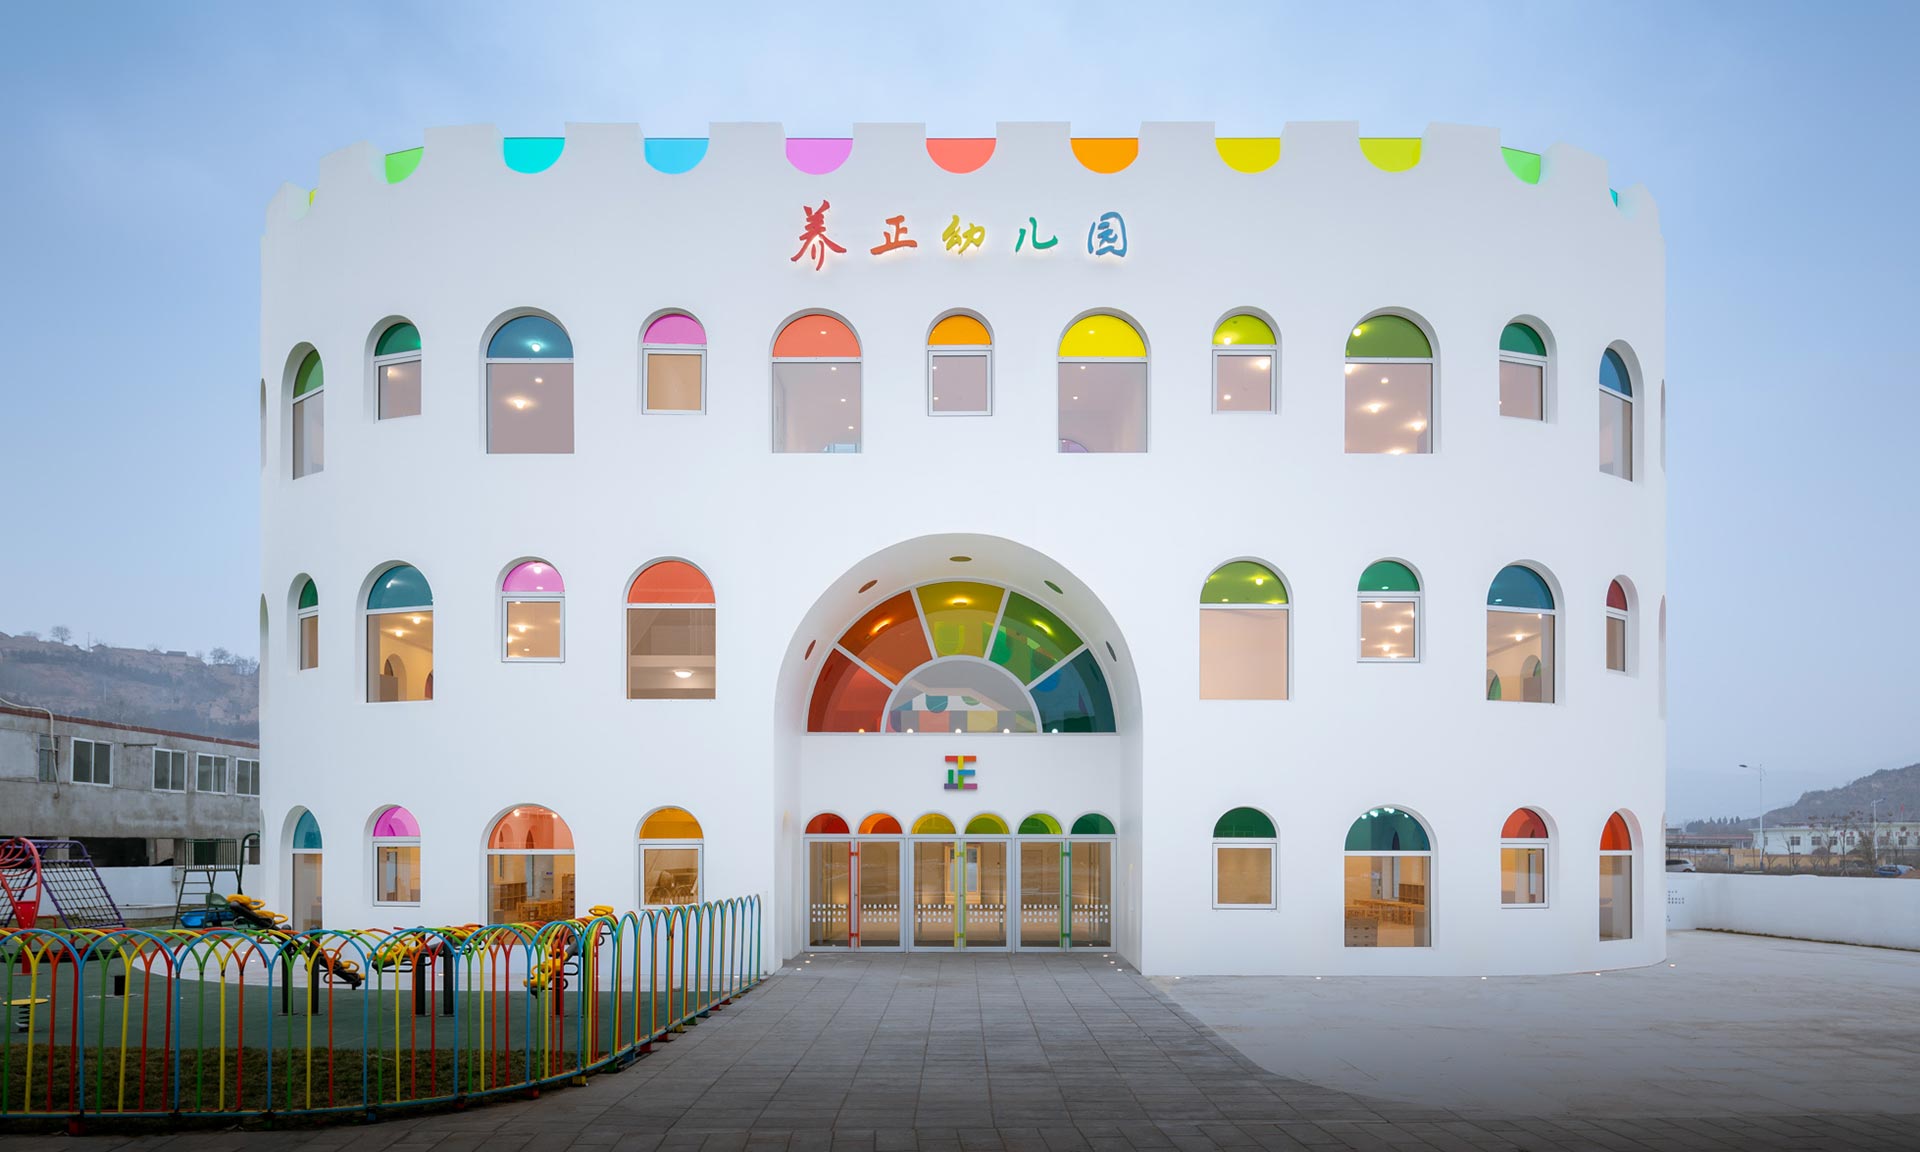 Mateřská škola Kaleidoscope od Sako Architects připomíná narozeninový dort